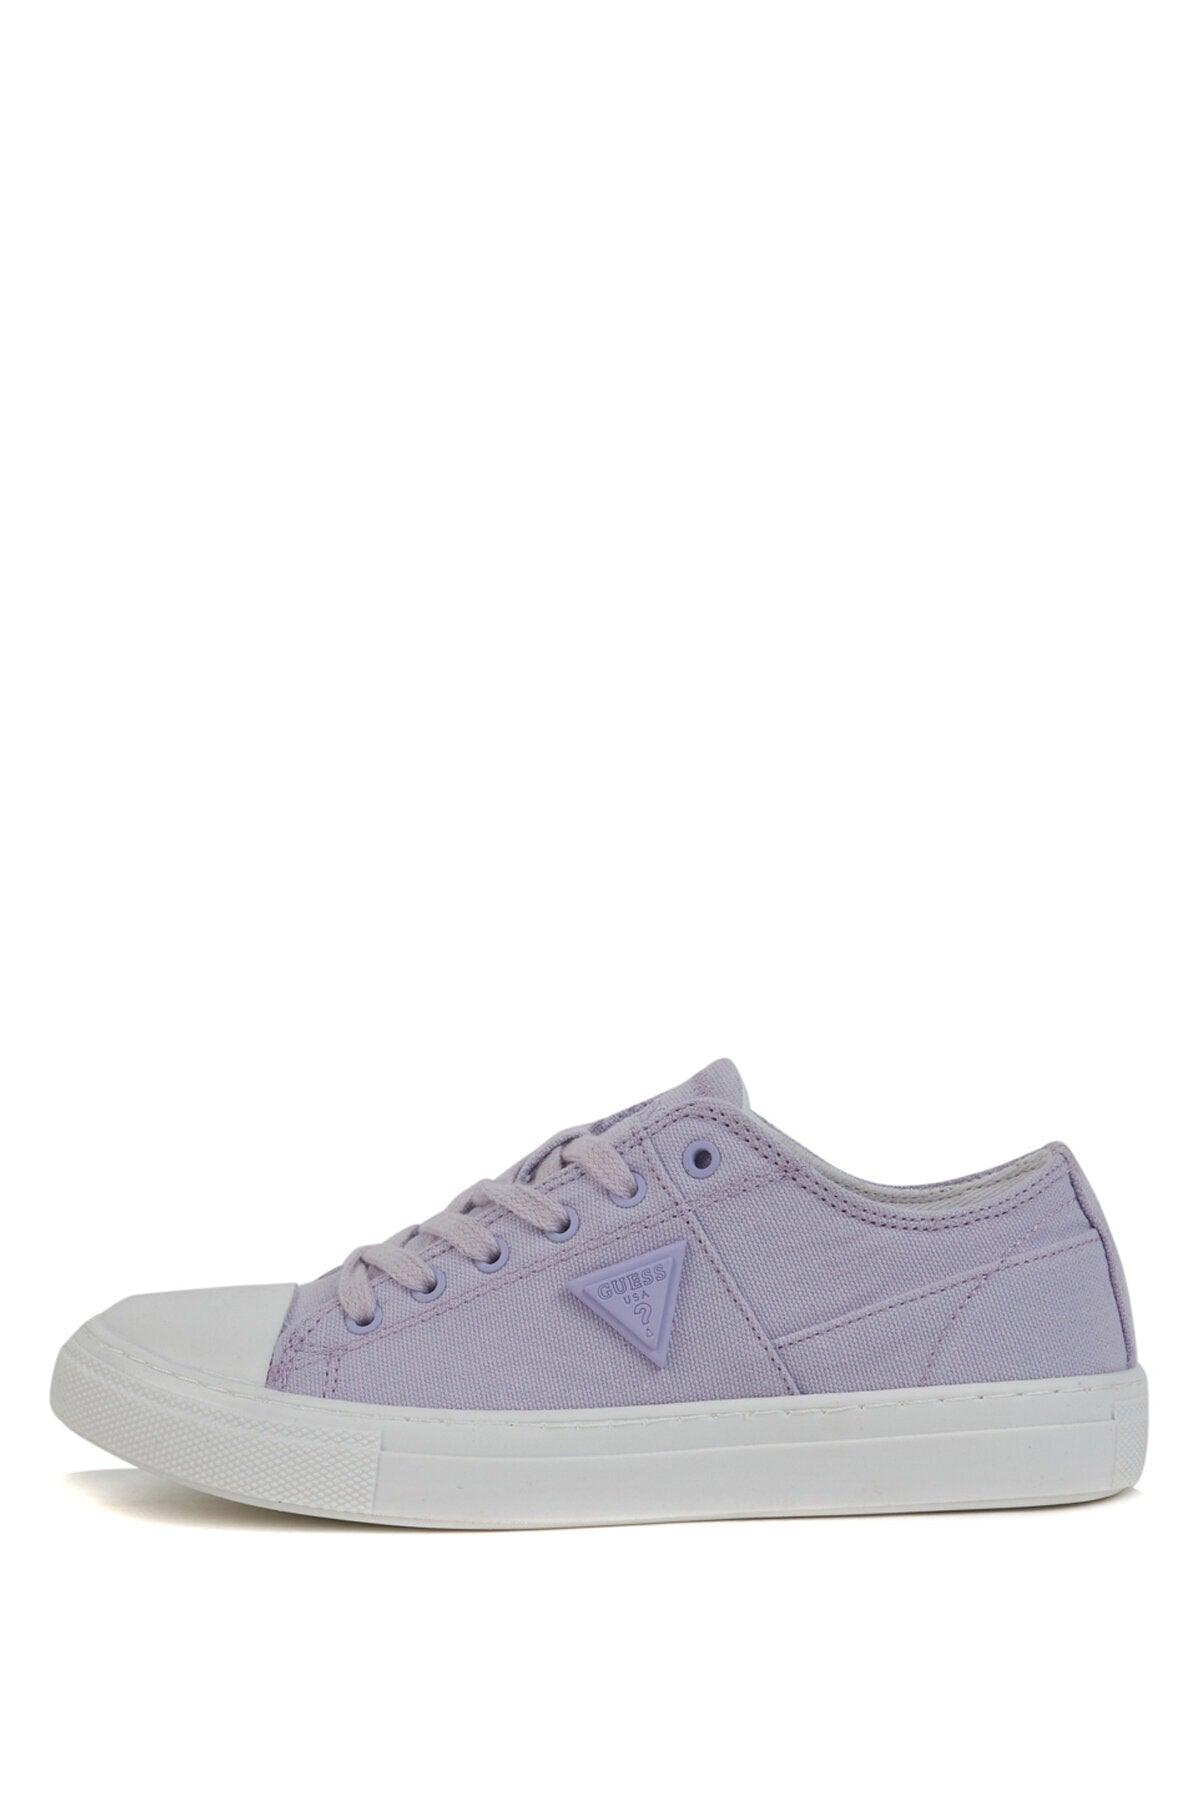 Purple - Pranze Women's Sneaker Shoes - Swordslife